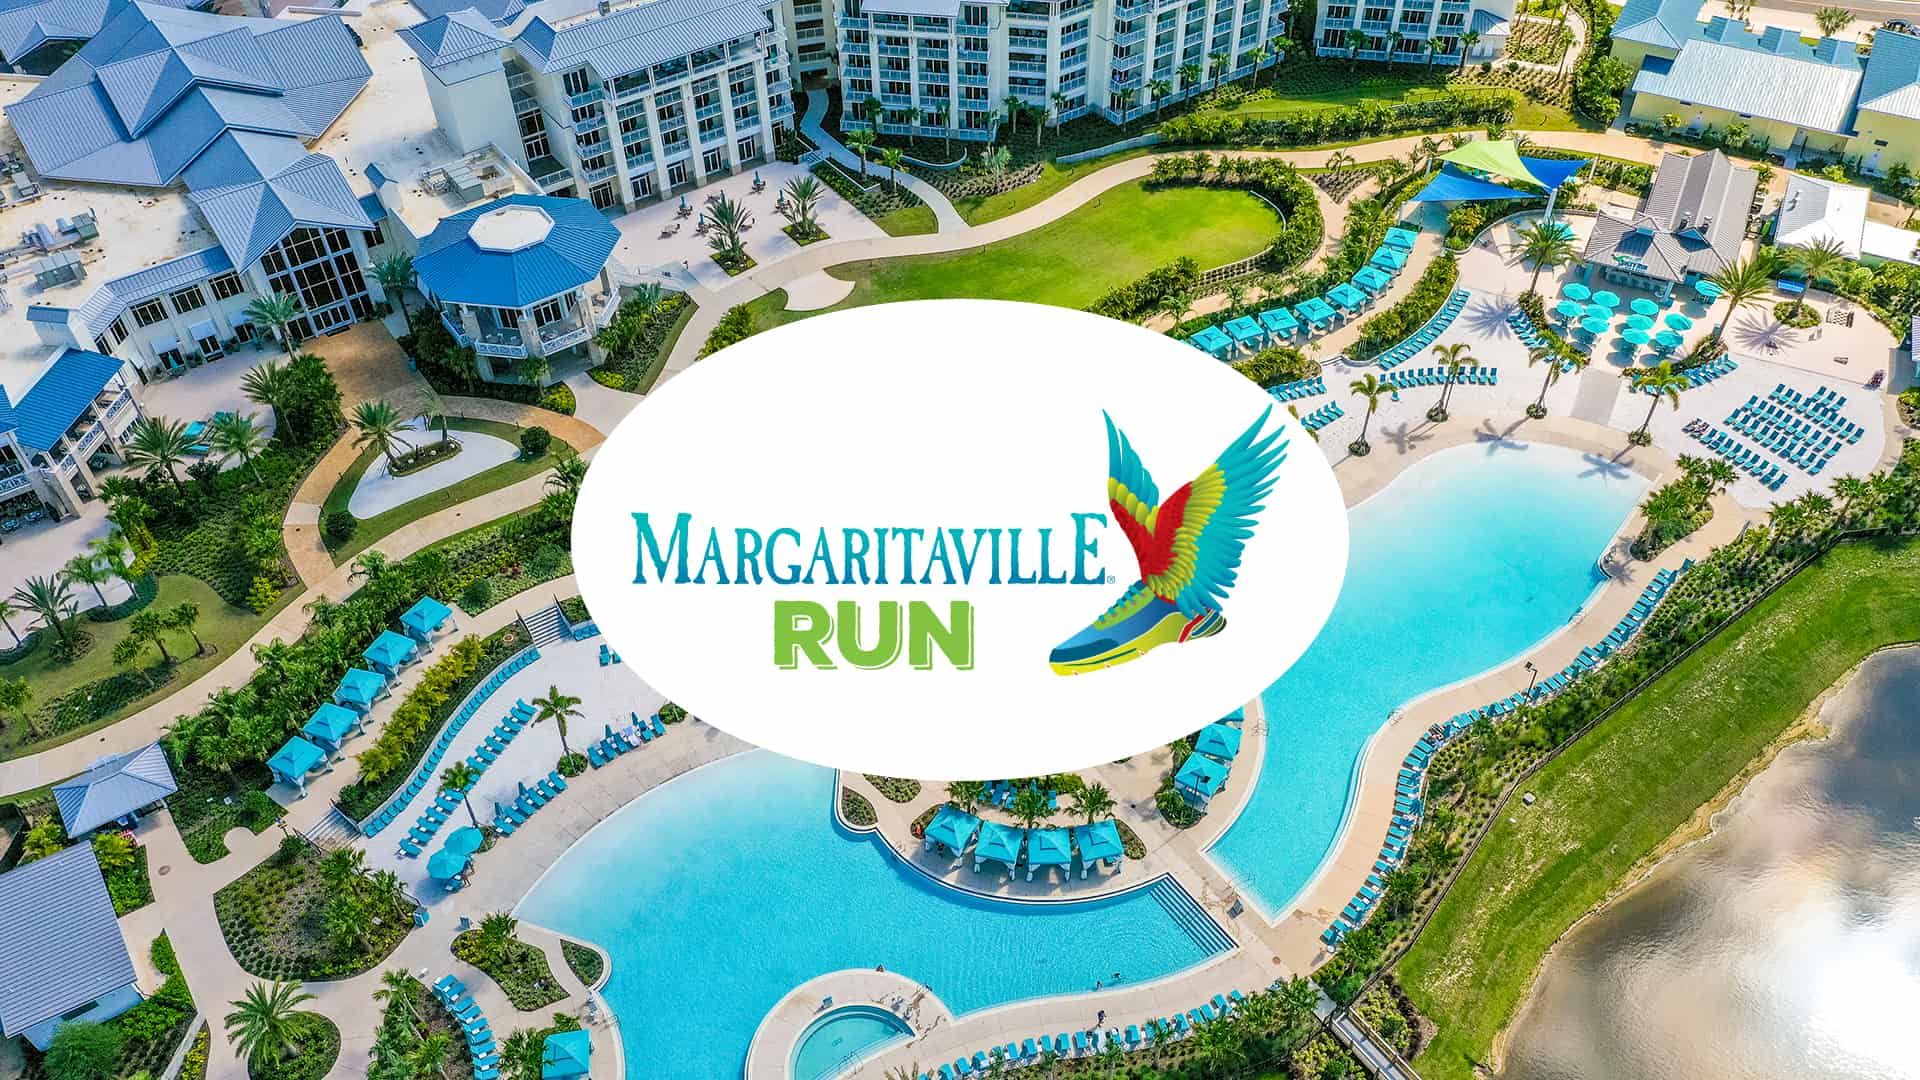 Margaritaville Run logo over Margaritaville Resort Orlando